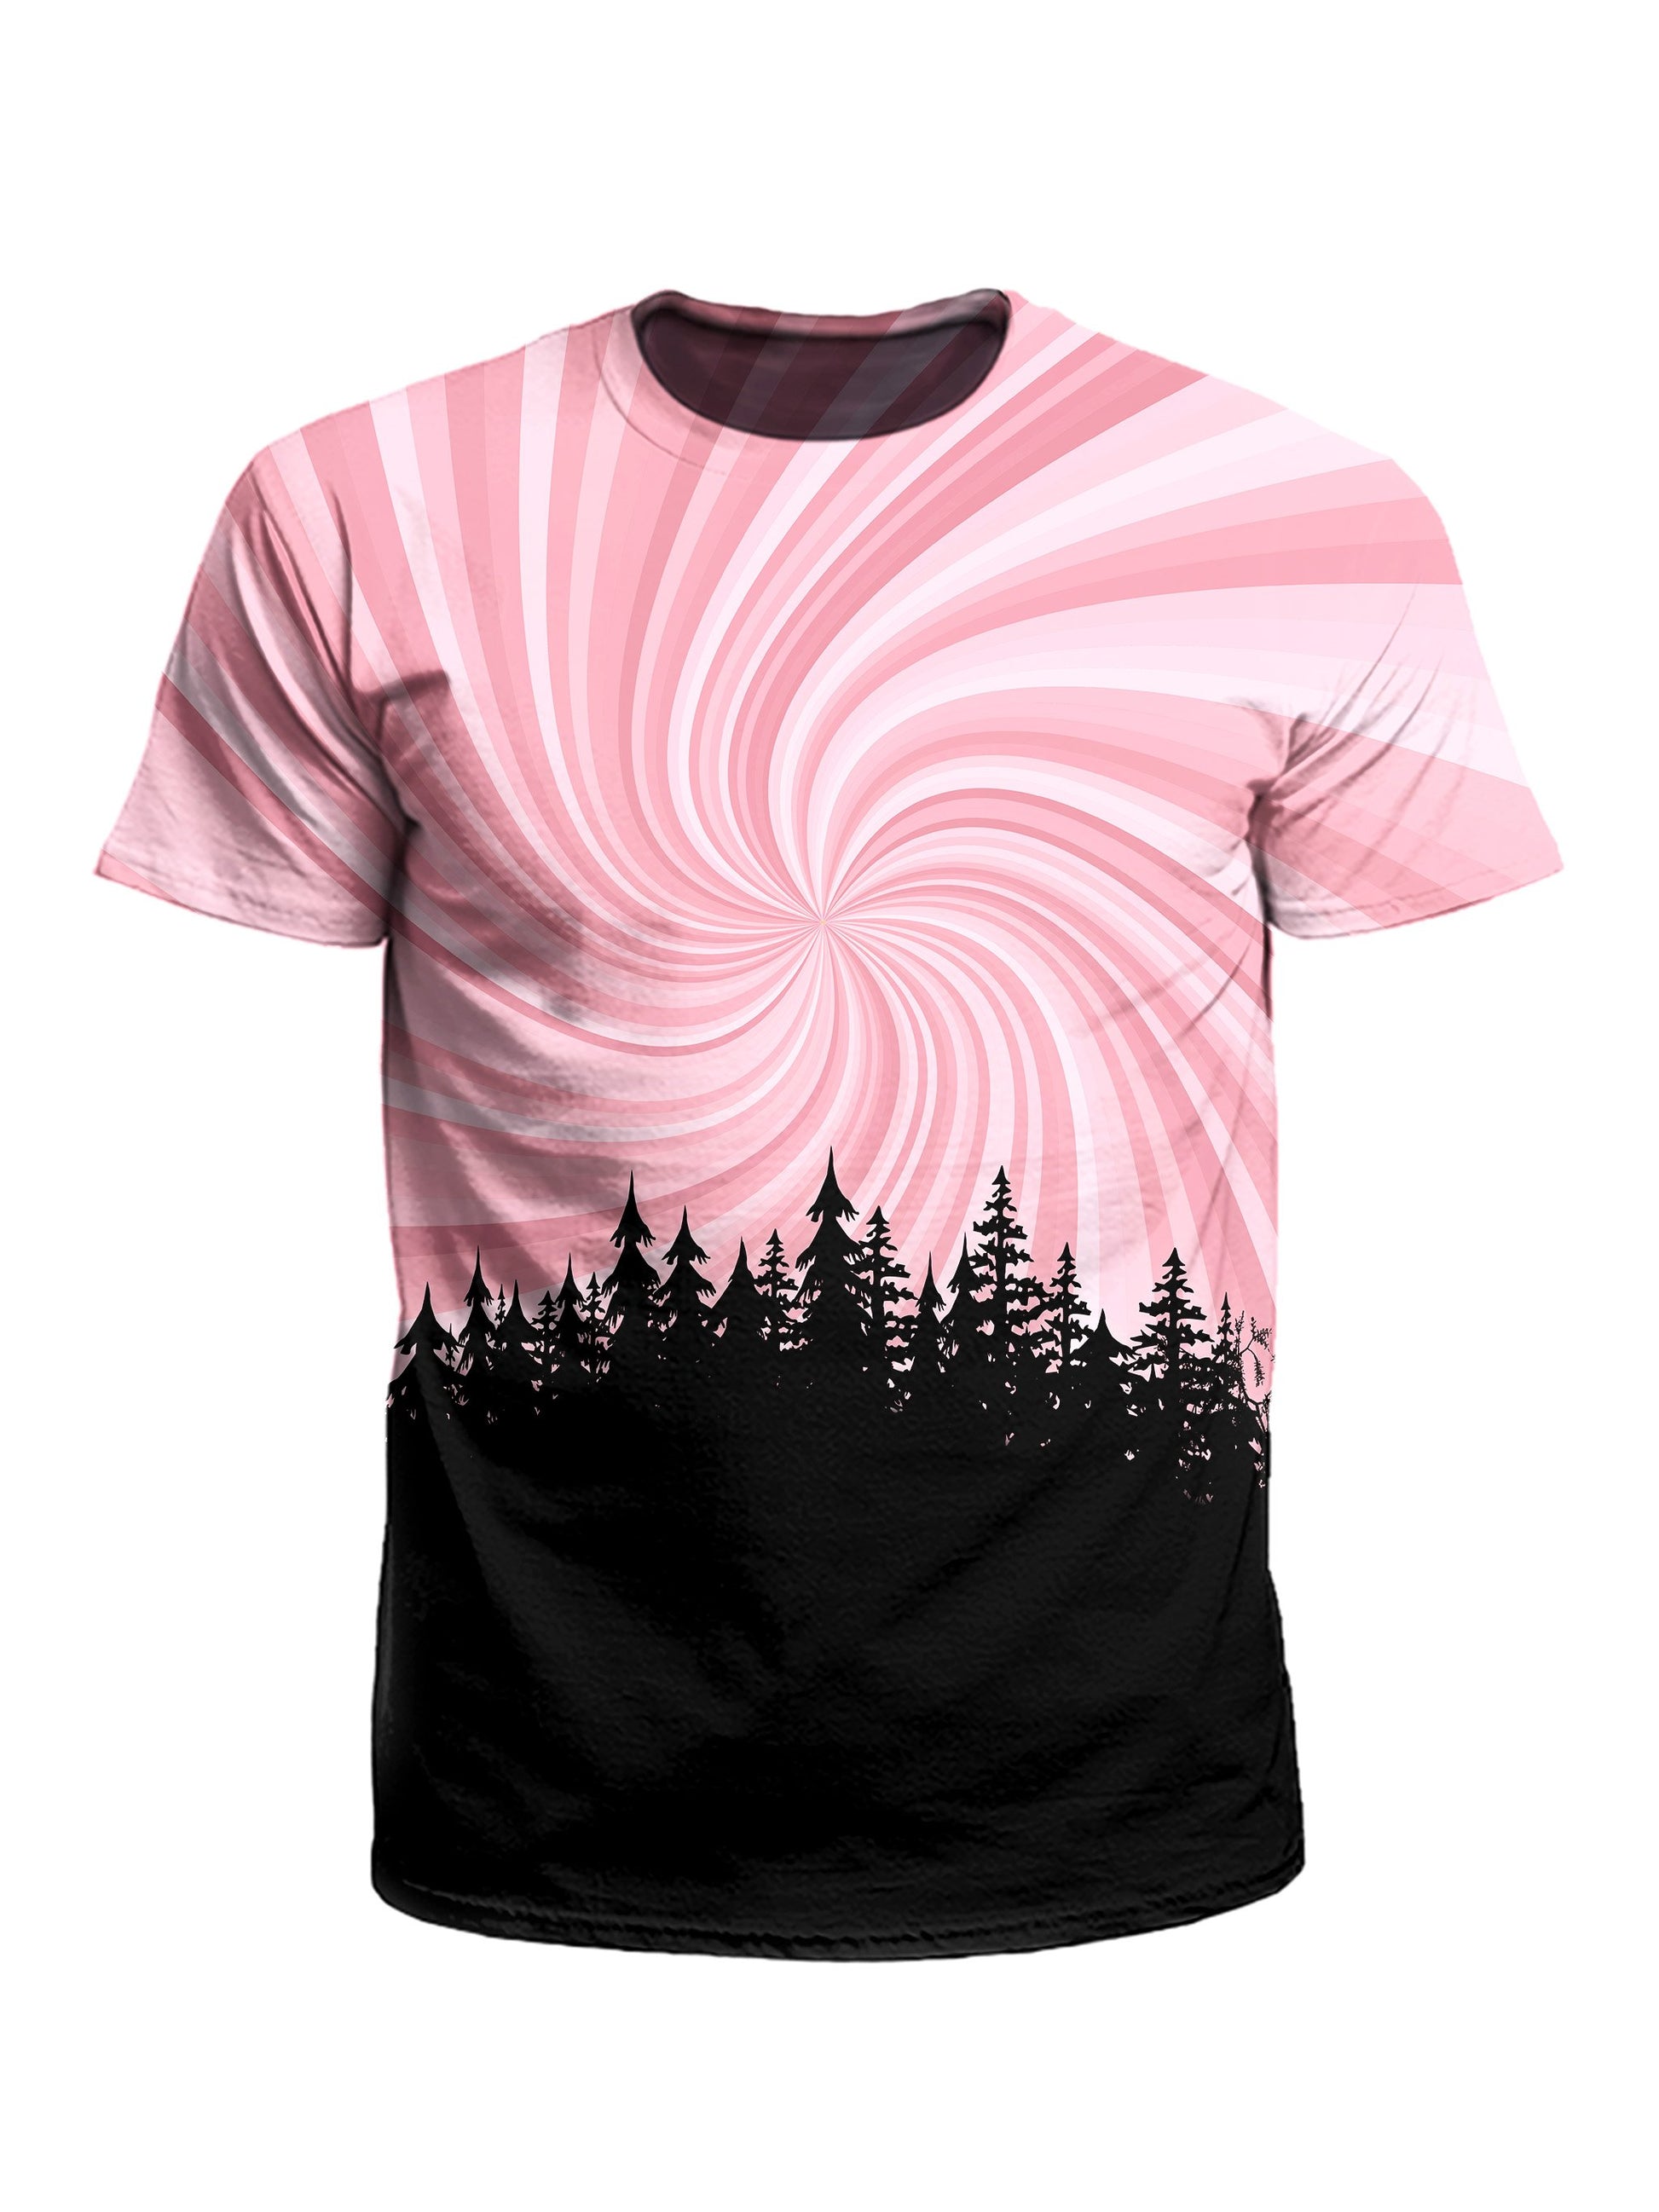 Men's pink & black spiral vortex treeline unisex t-shirt front view.